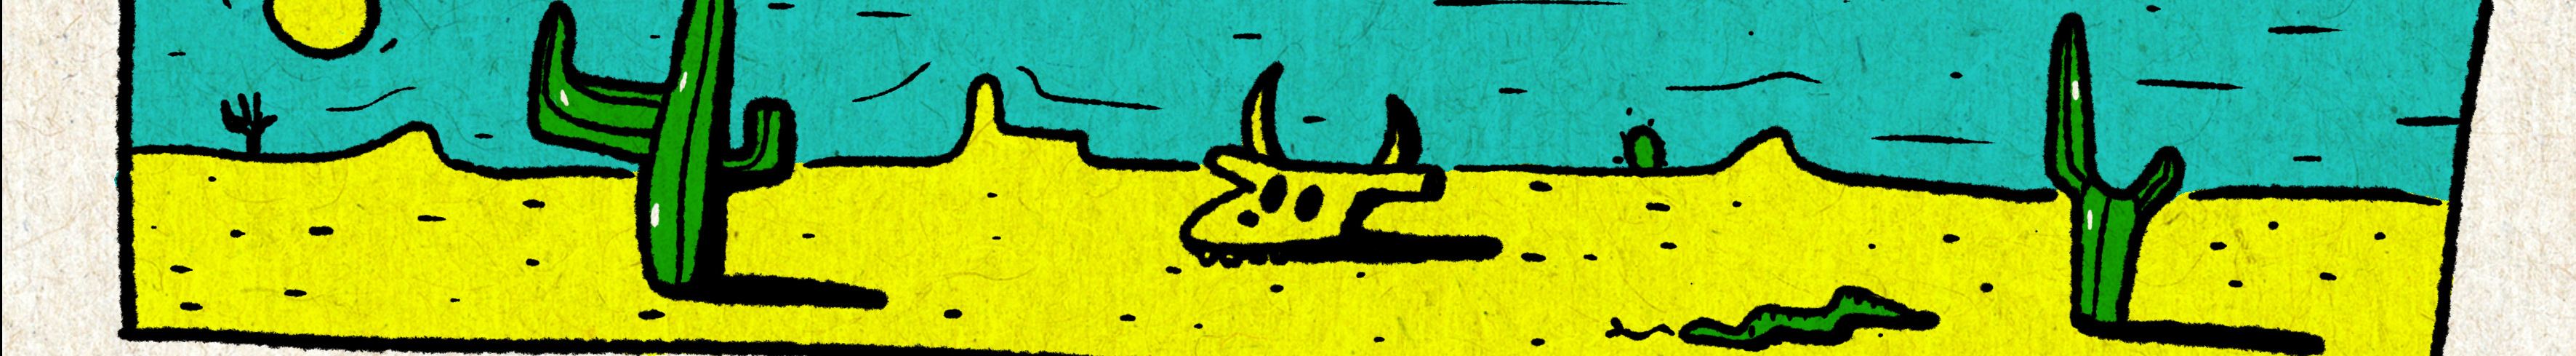 tunç eren's profile banner